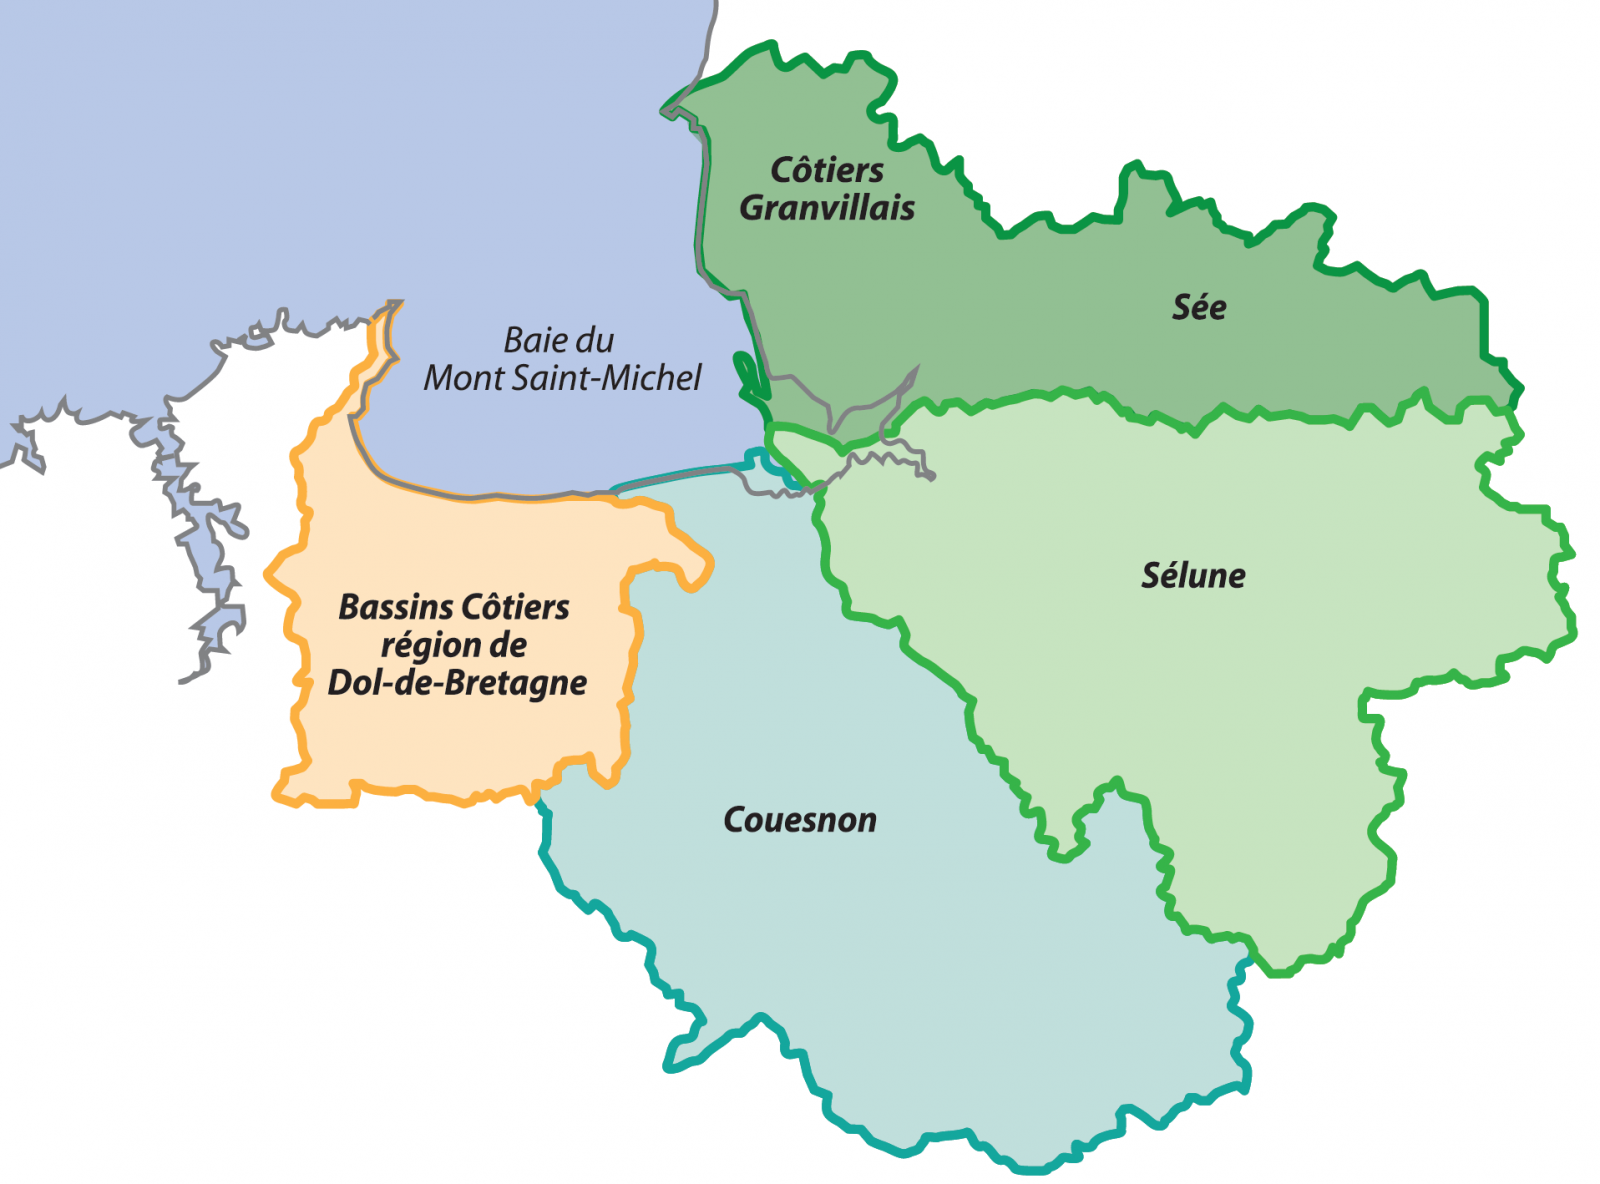 Carte d'illustration des 4 Sage de la baie du Mont Saint-Michel : bassins côtiers de Dol-de-Bretagne, Couesnon, Sélune, Sée et côtiers Grandvillais